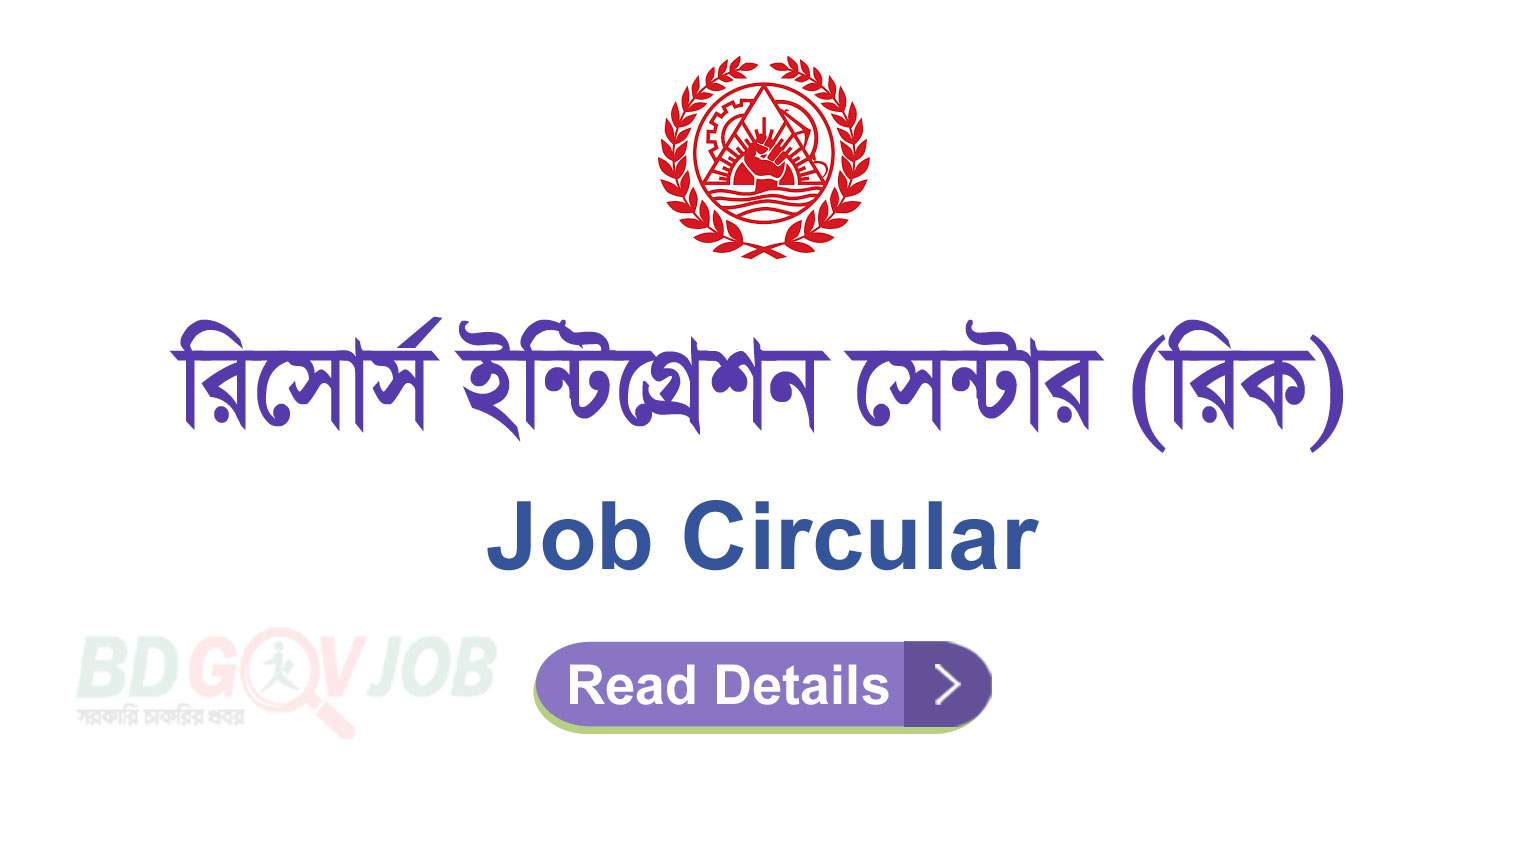 RIC NGO Job Circular